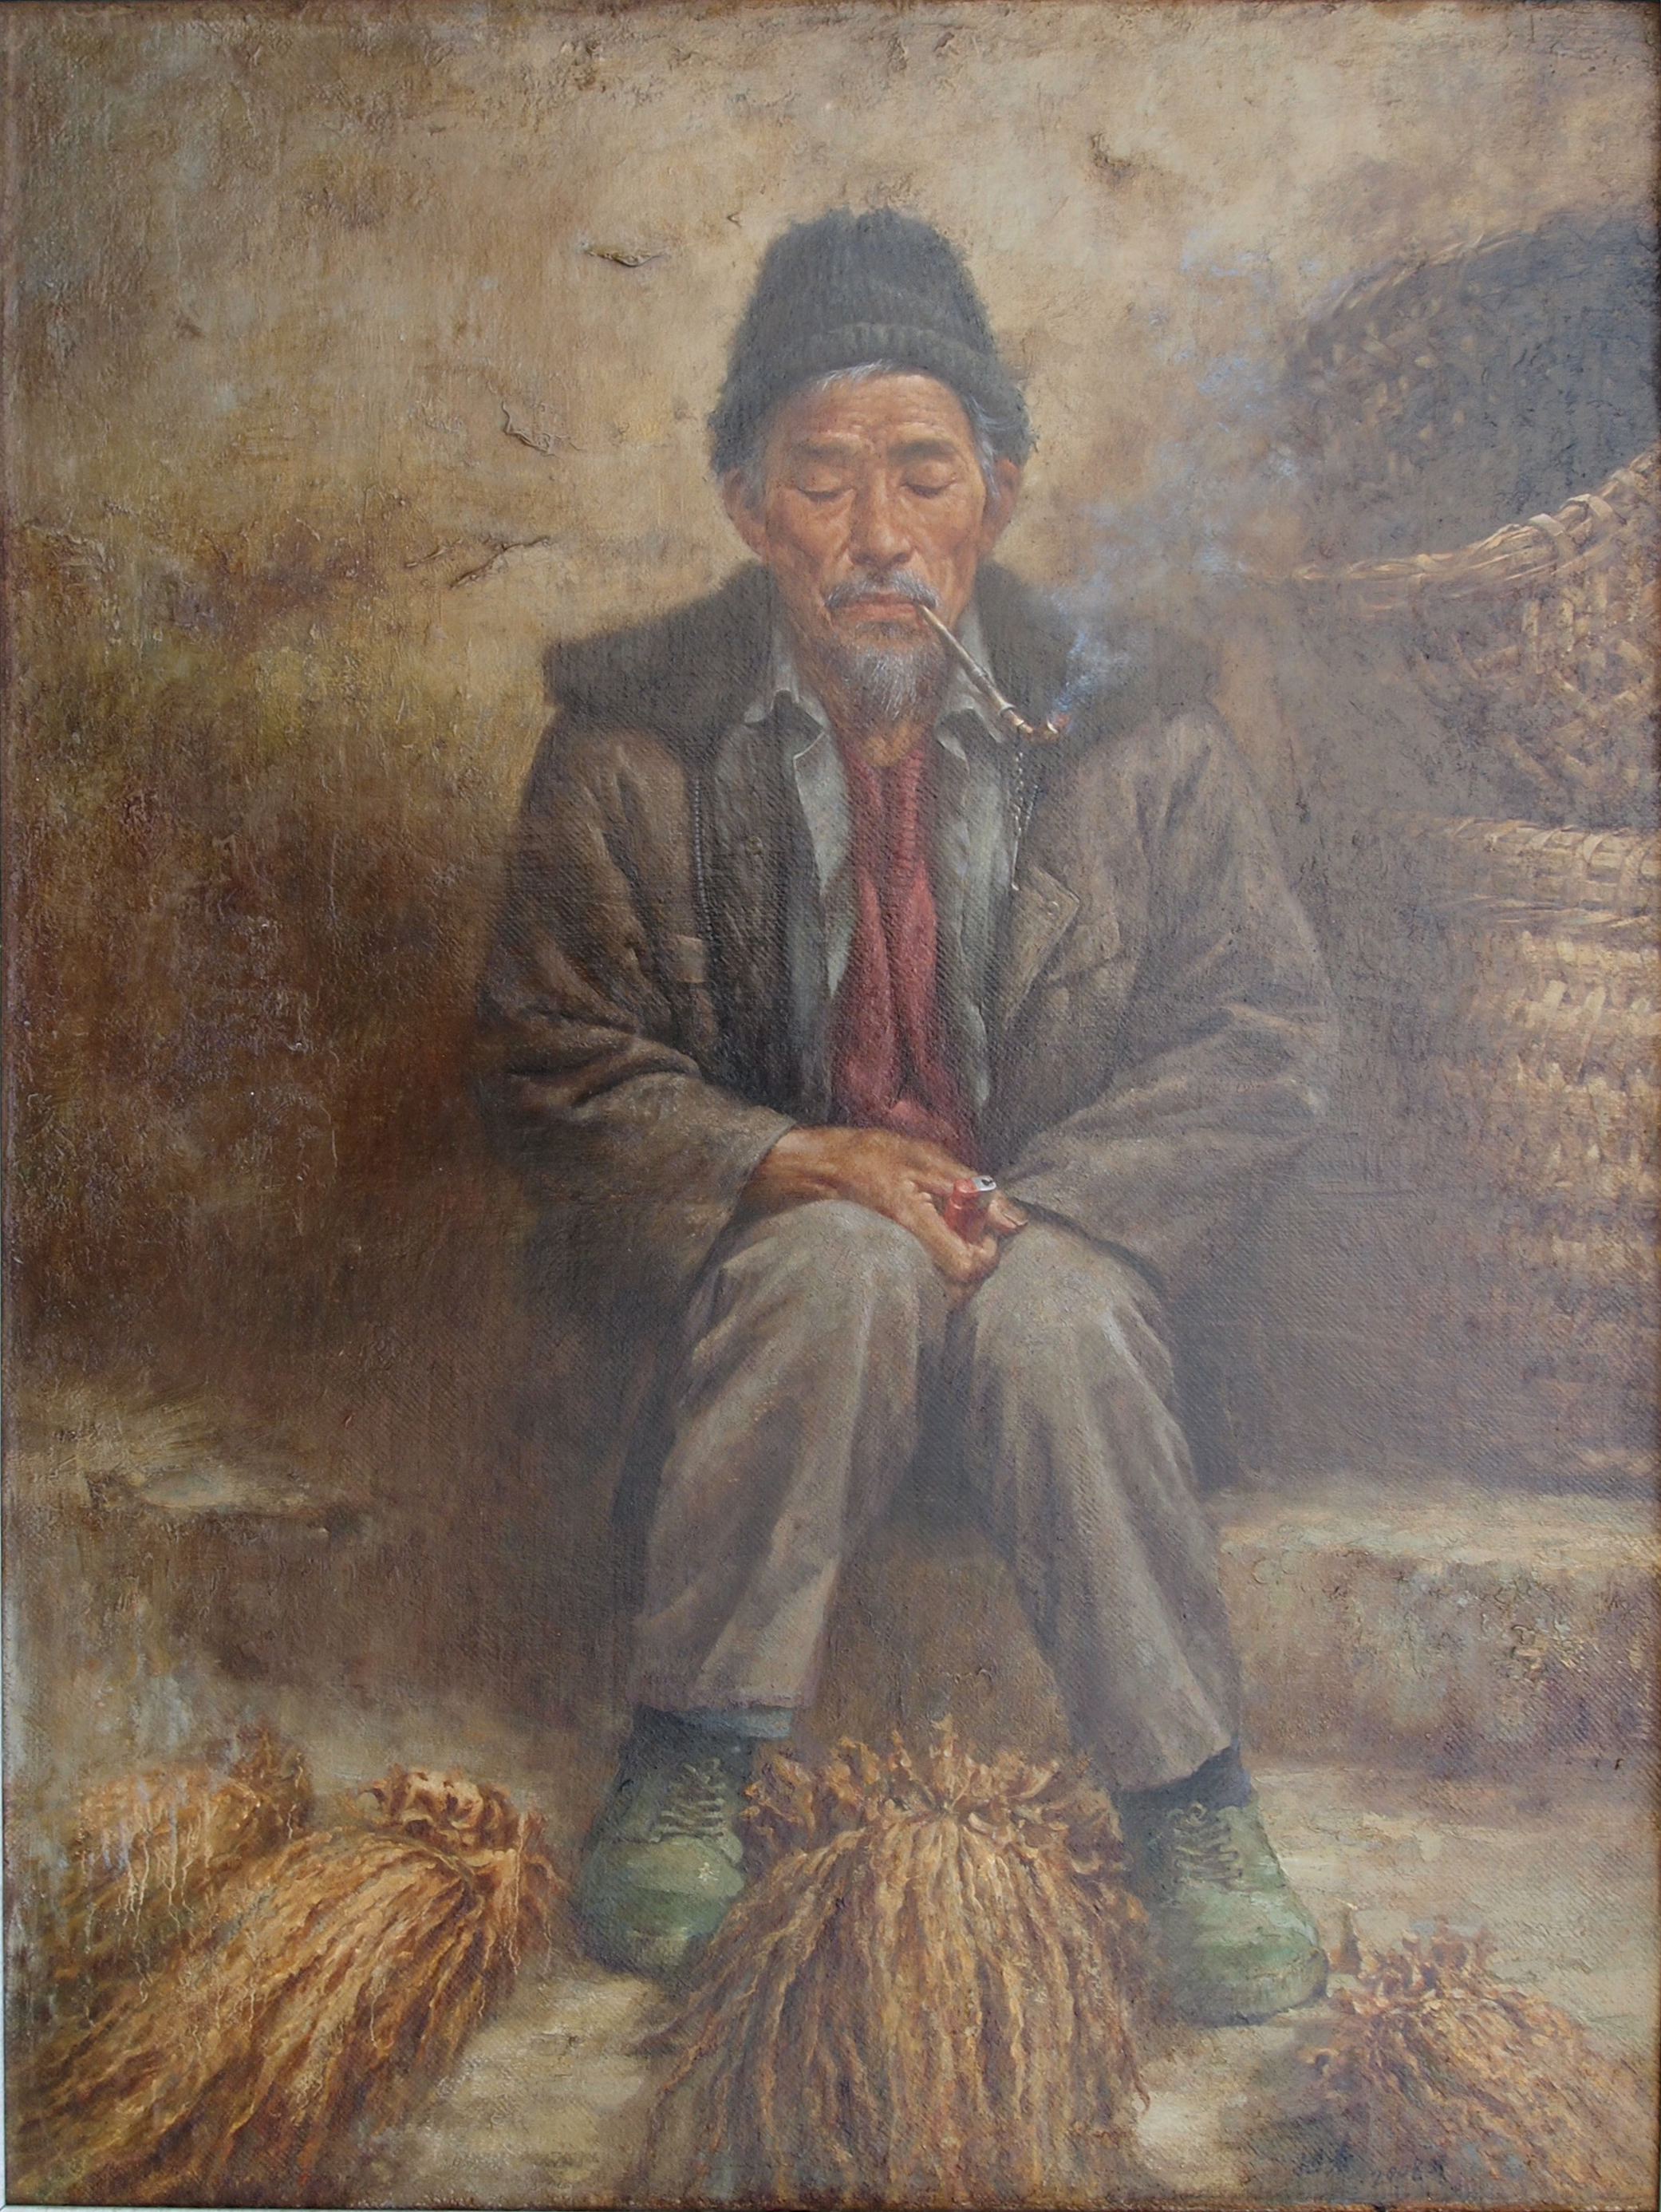 【中国油画】潘旭春 烟叶老人 2006年 75 x 100cm